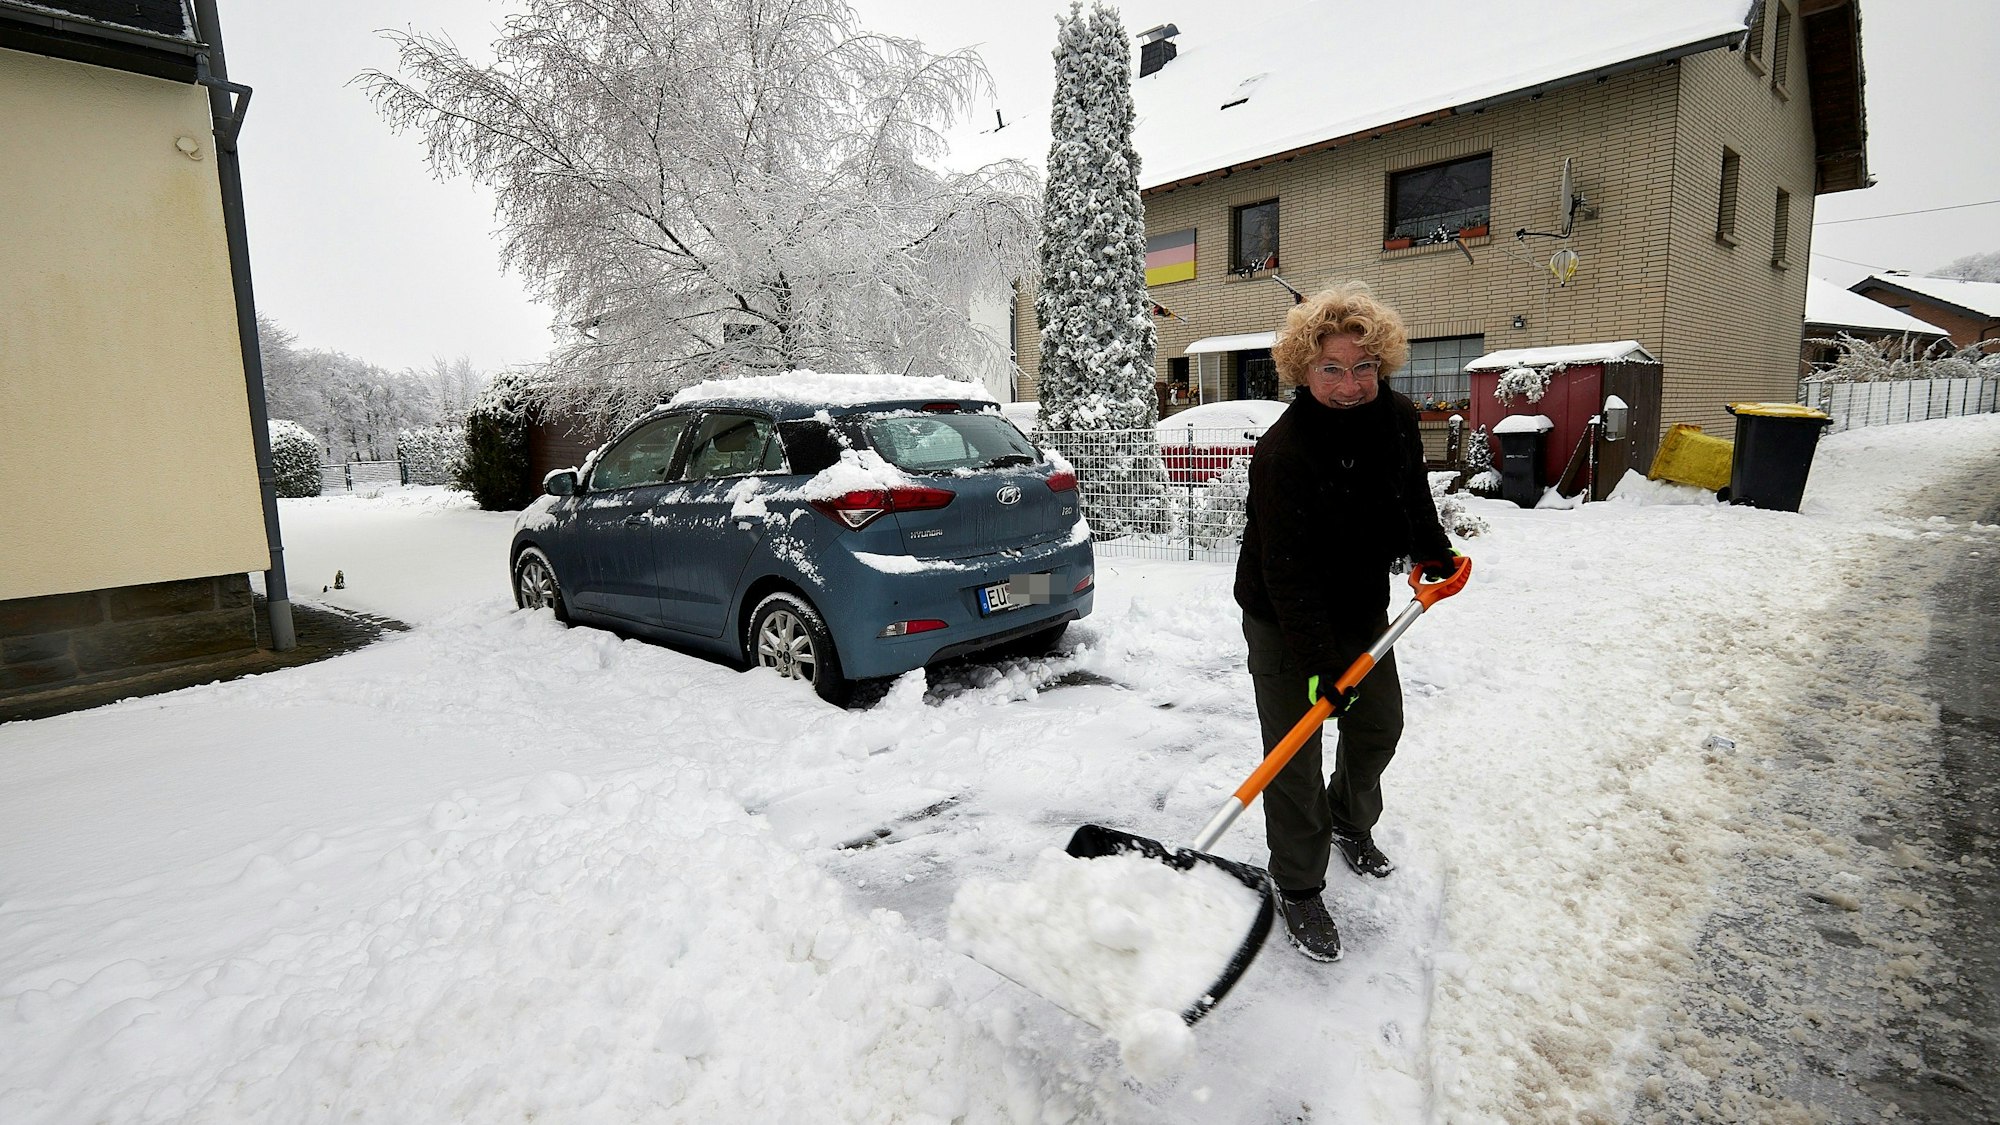 Die Udenbretherin Doris Haep schaufelt ihre Hauseinfahrt frei, in der rund zehn Zentimeter Schnee liegt.